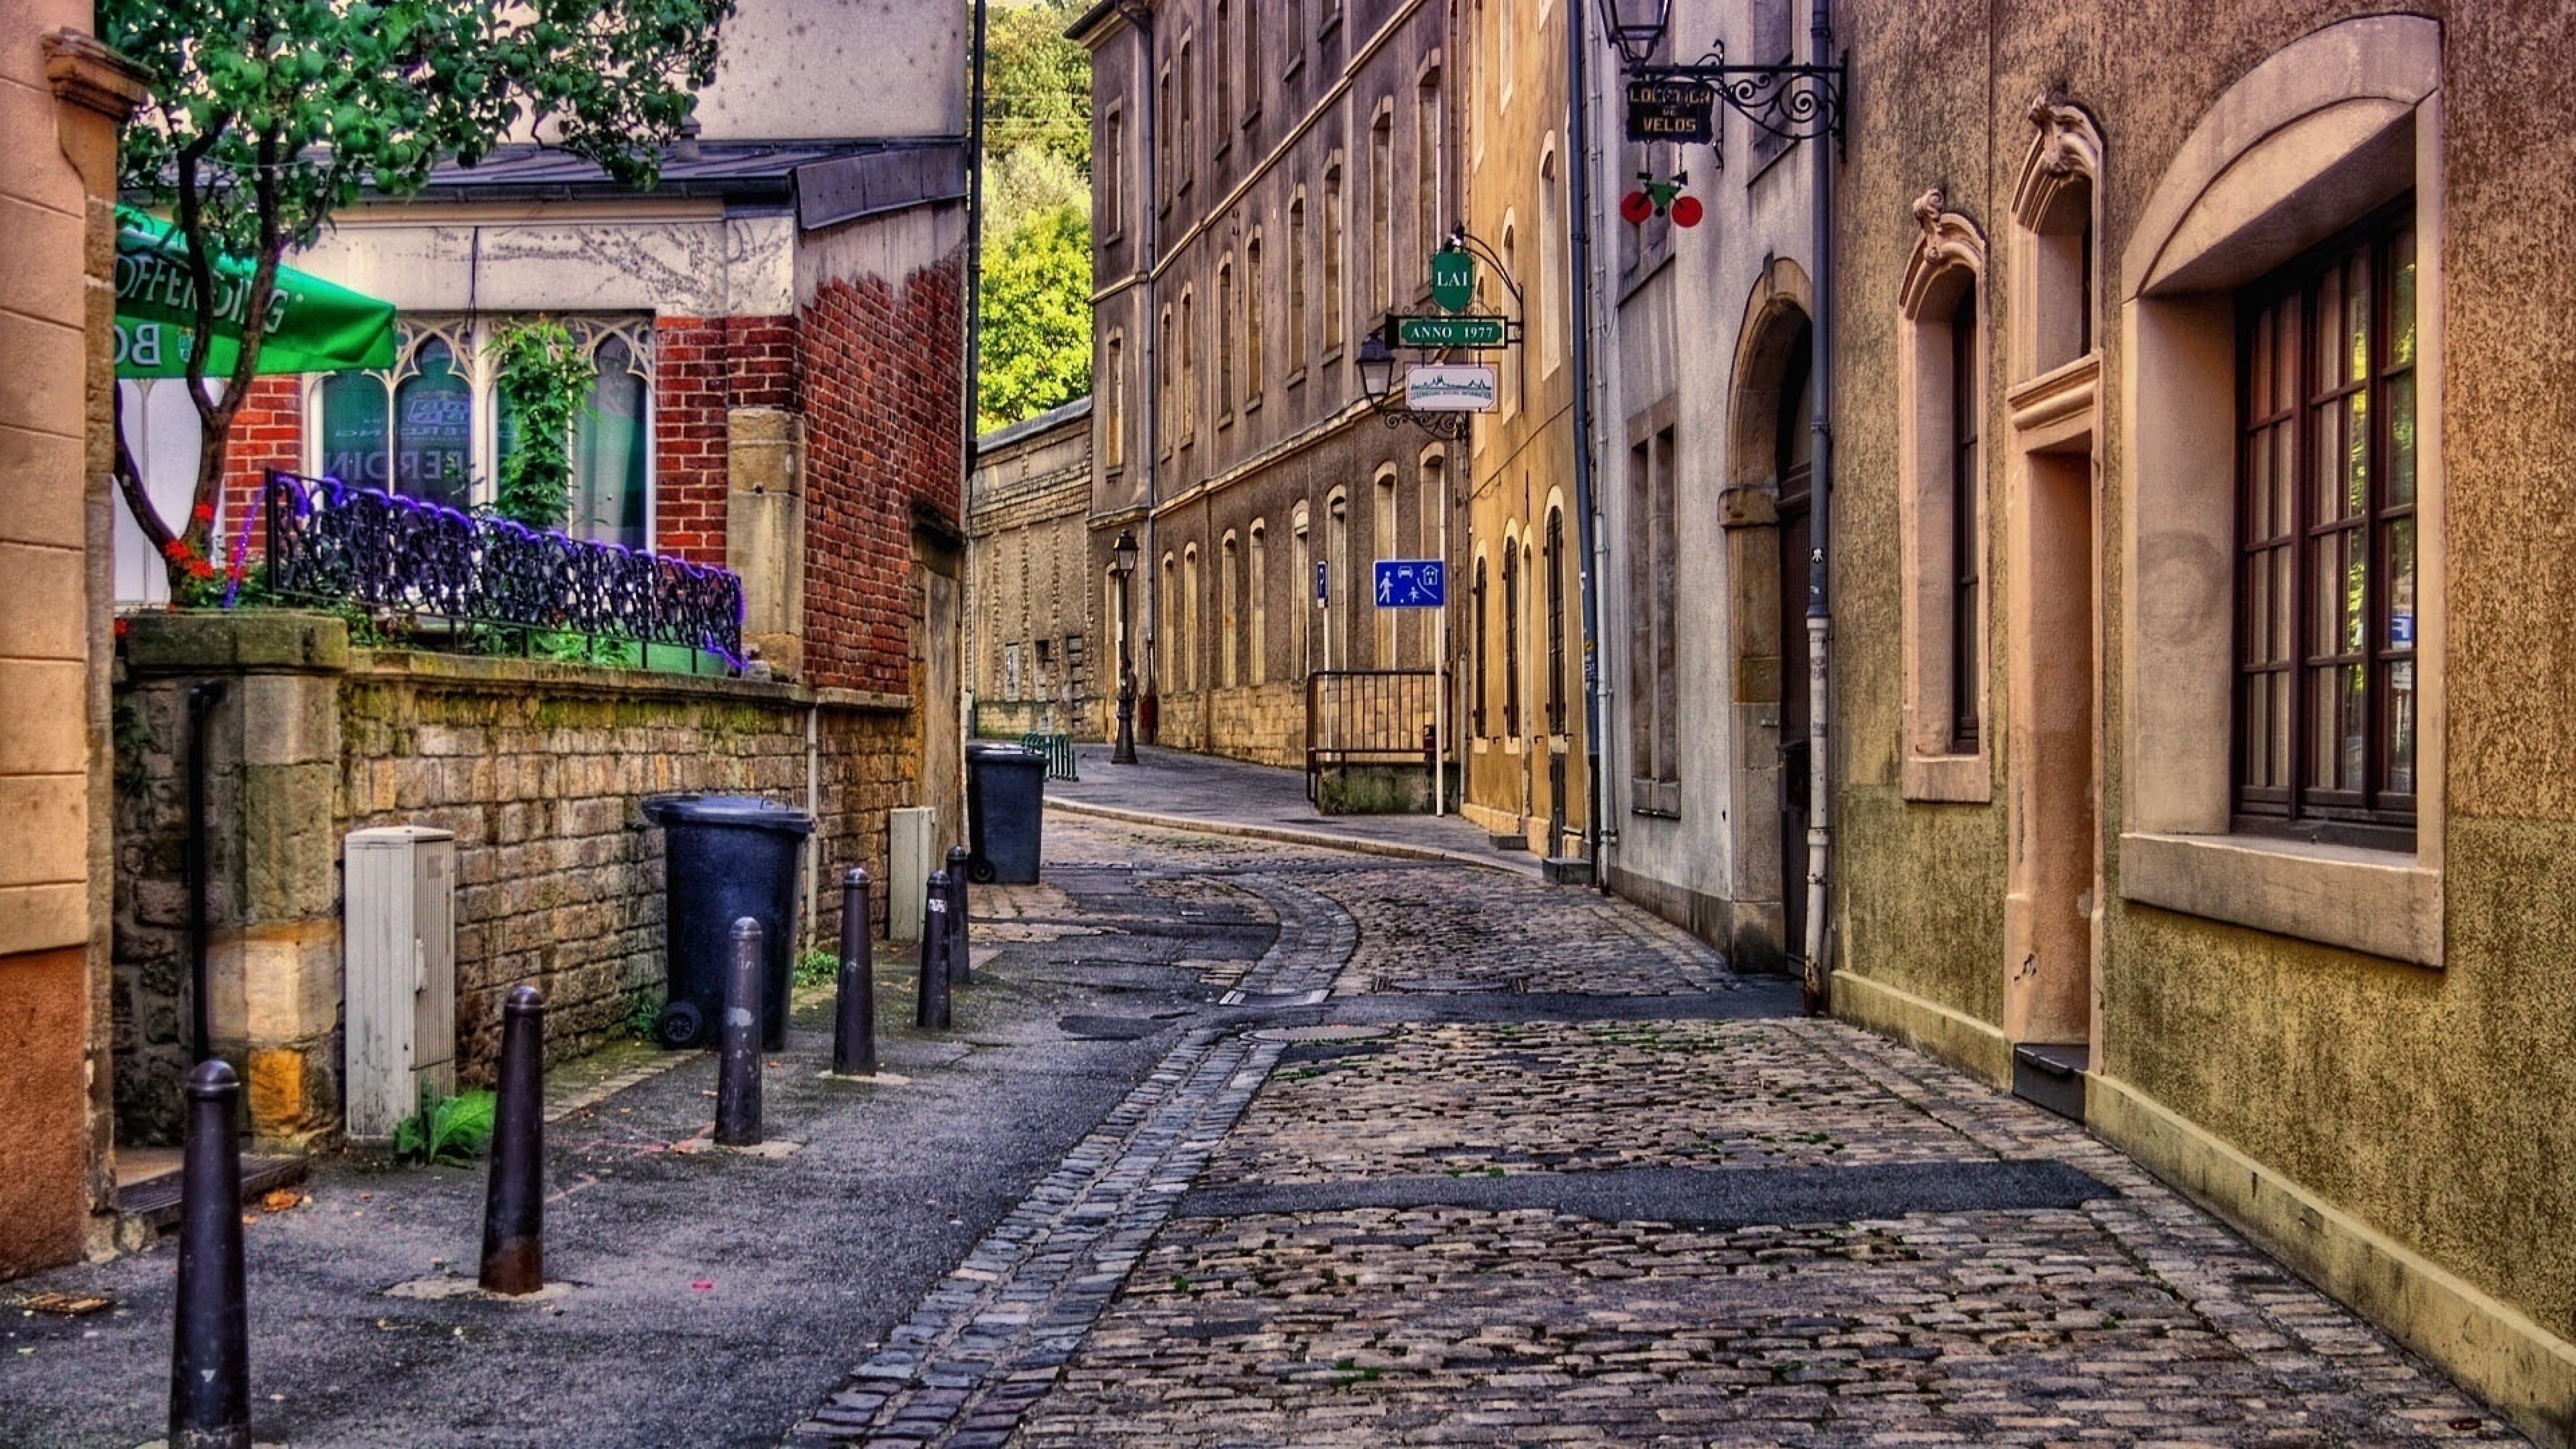 Обои на стол на улице. Брюссель улочки. Франция 19 век фон улица. Эдинбург Шотландия улицы. Старый двор Мюнхен.